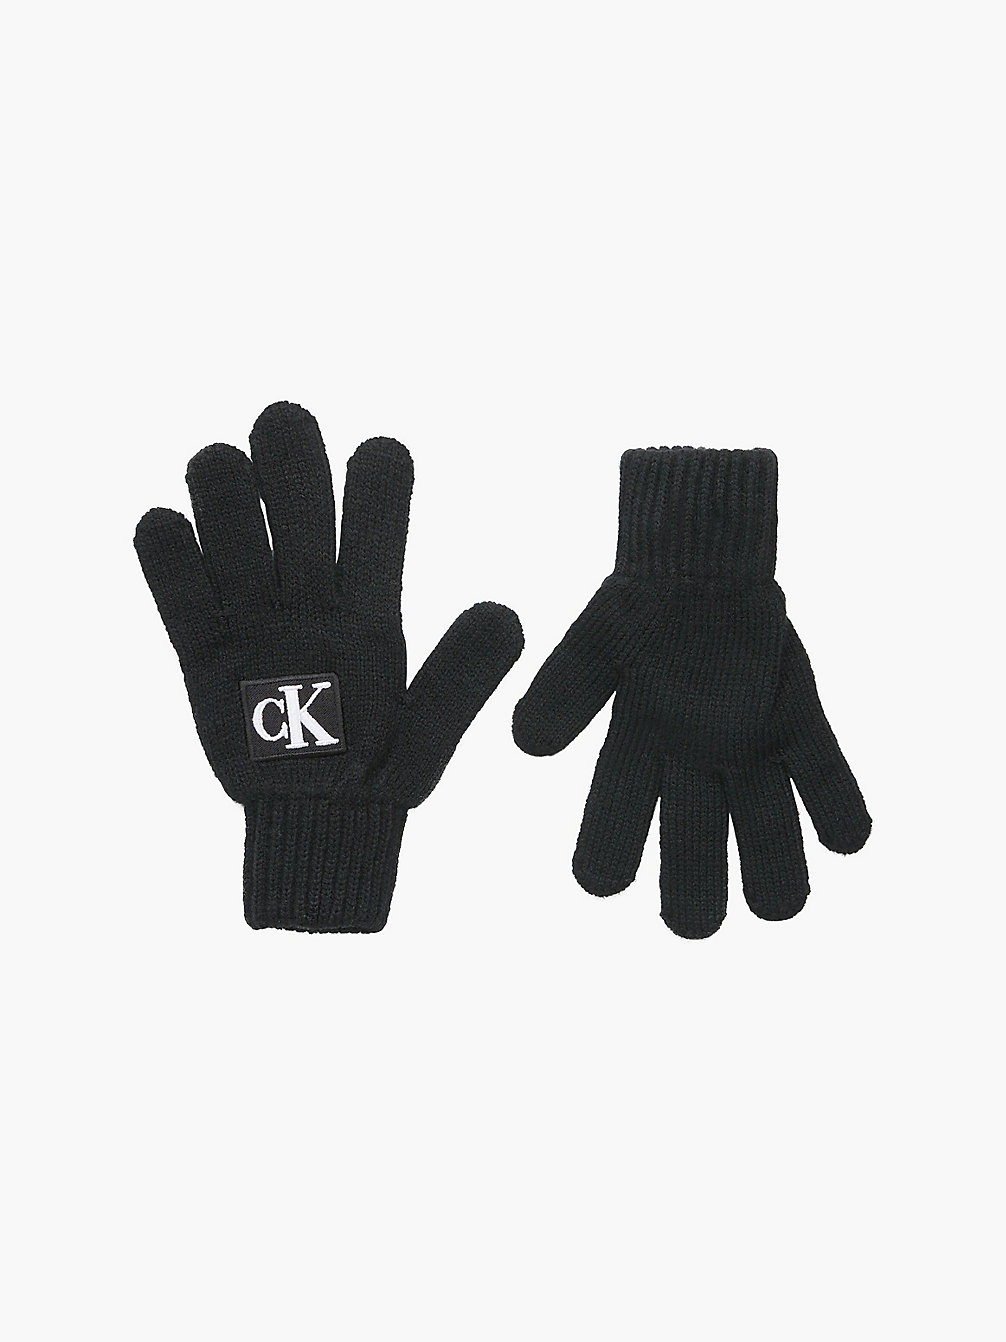 CK BLACK > Unisex-Logo-Handschuhe > undefined kids unisex - Calvin Klein